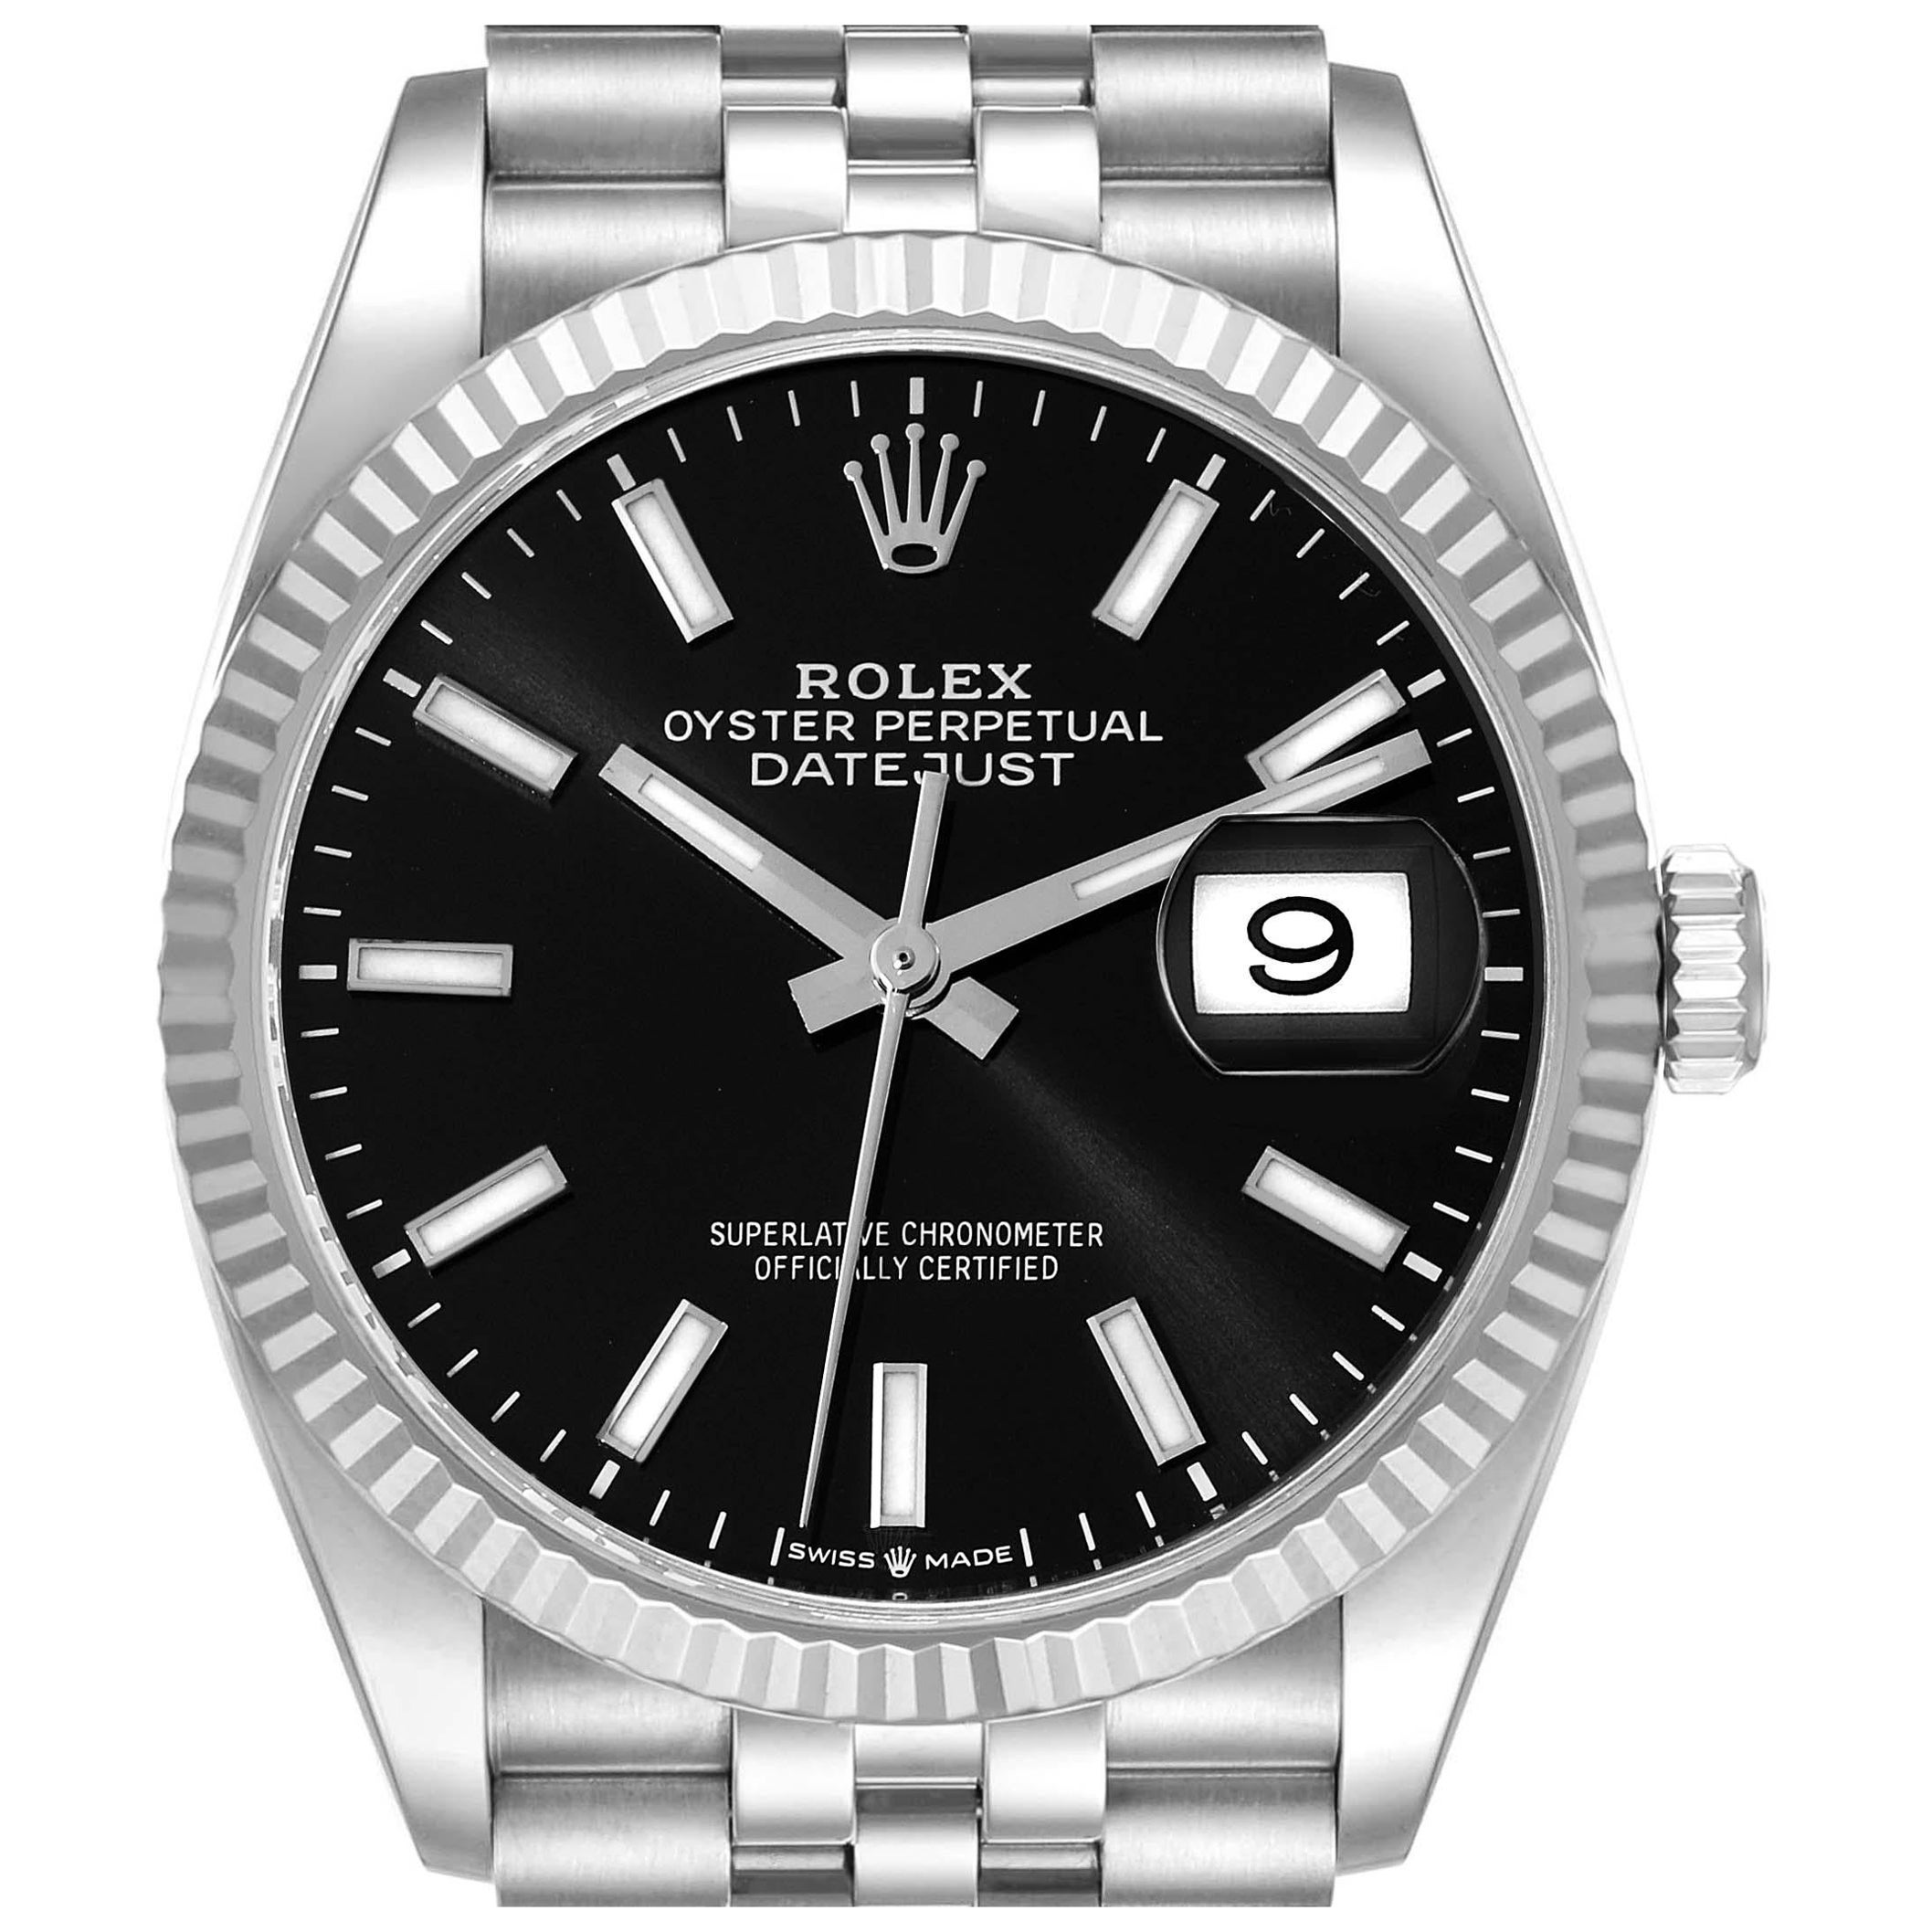 Rolex Datejust Steel White Gold Black Dial Mens Watch 126234 Unworn